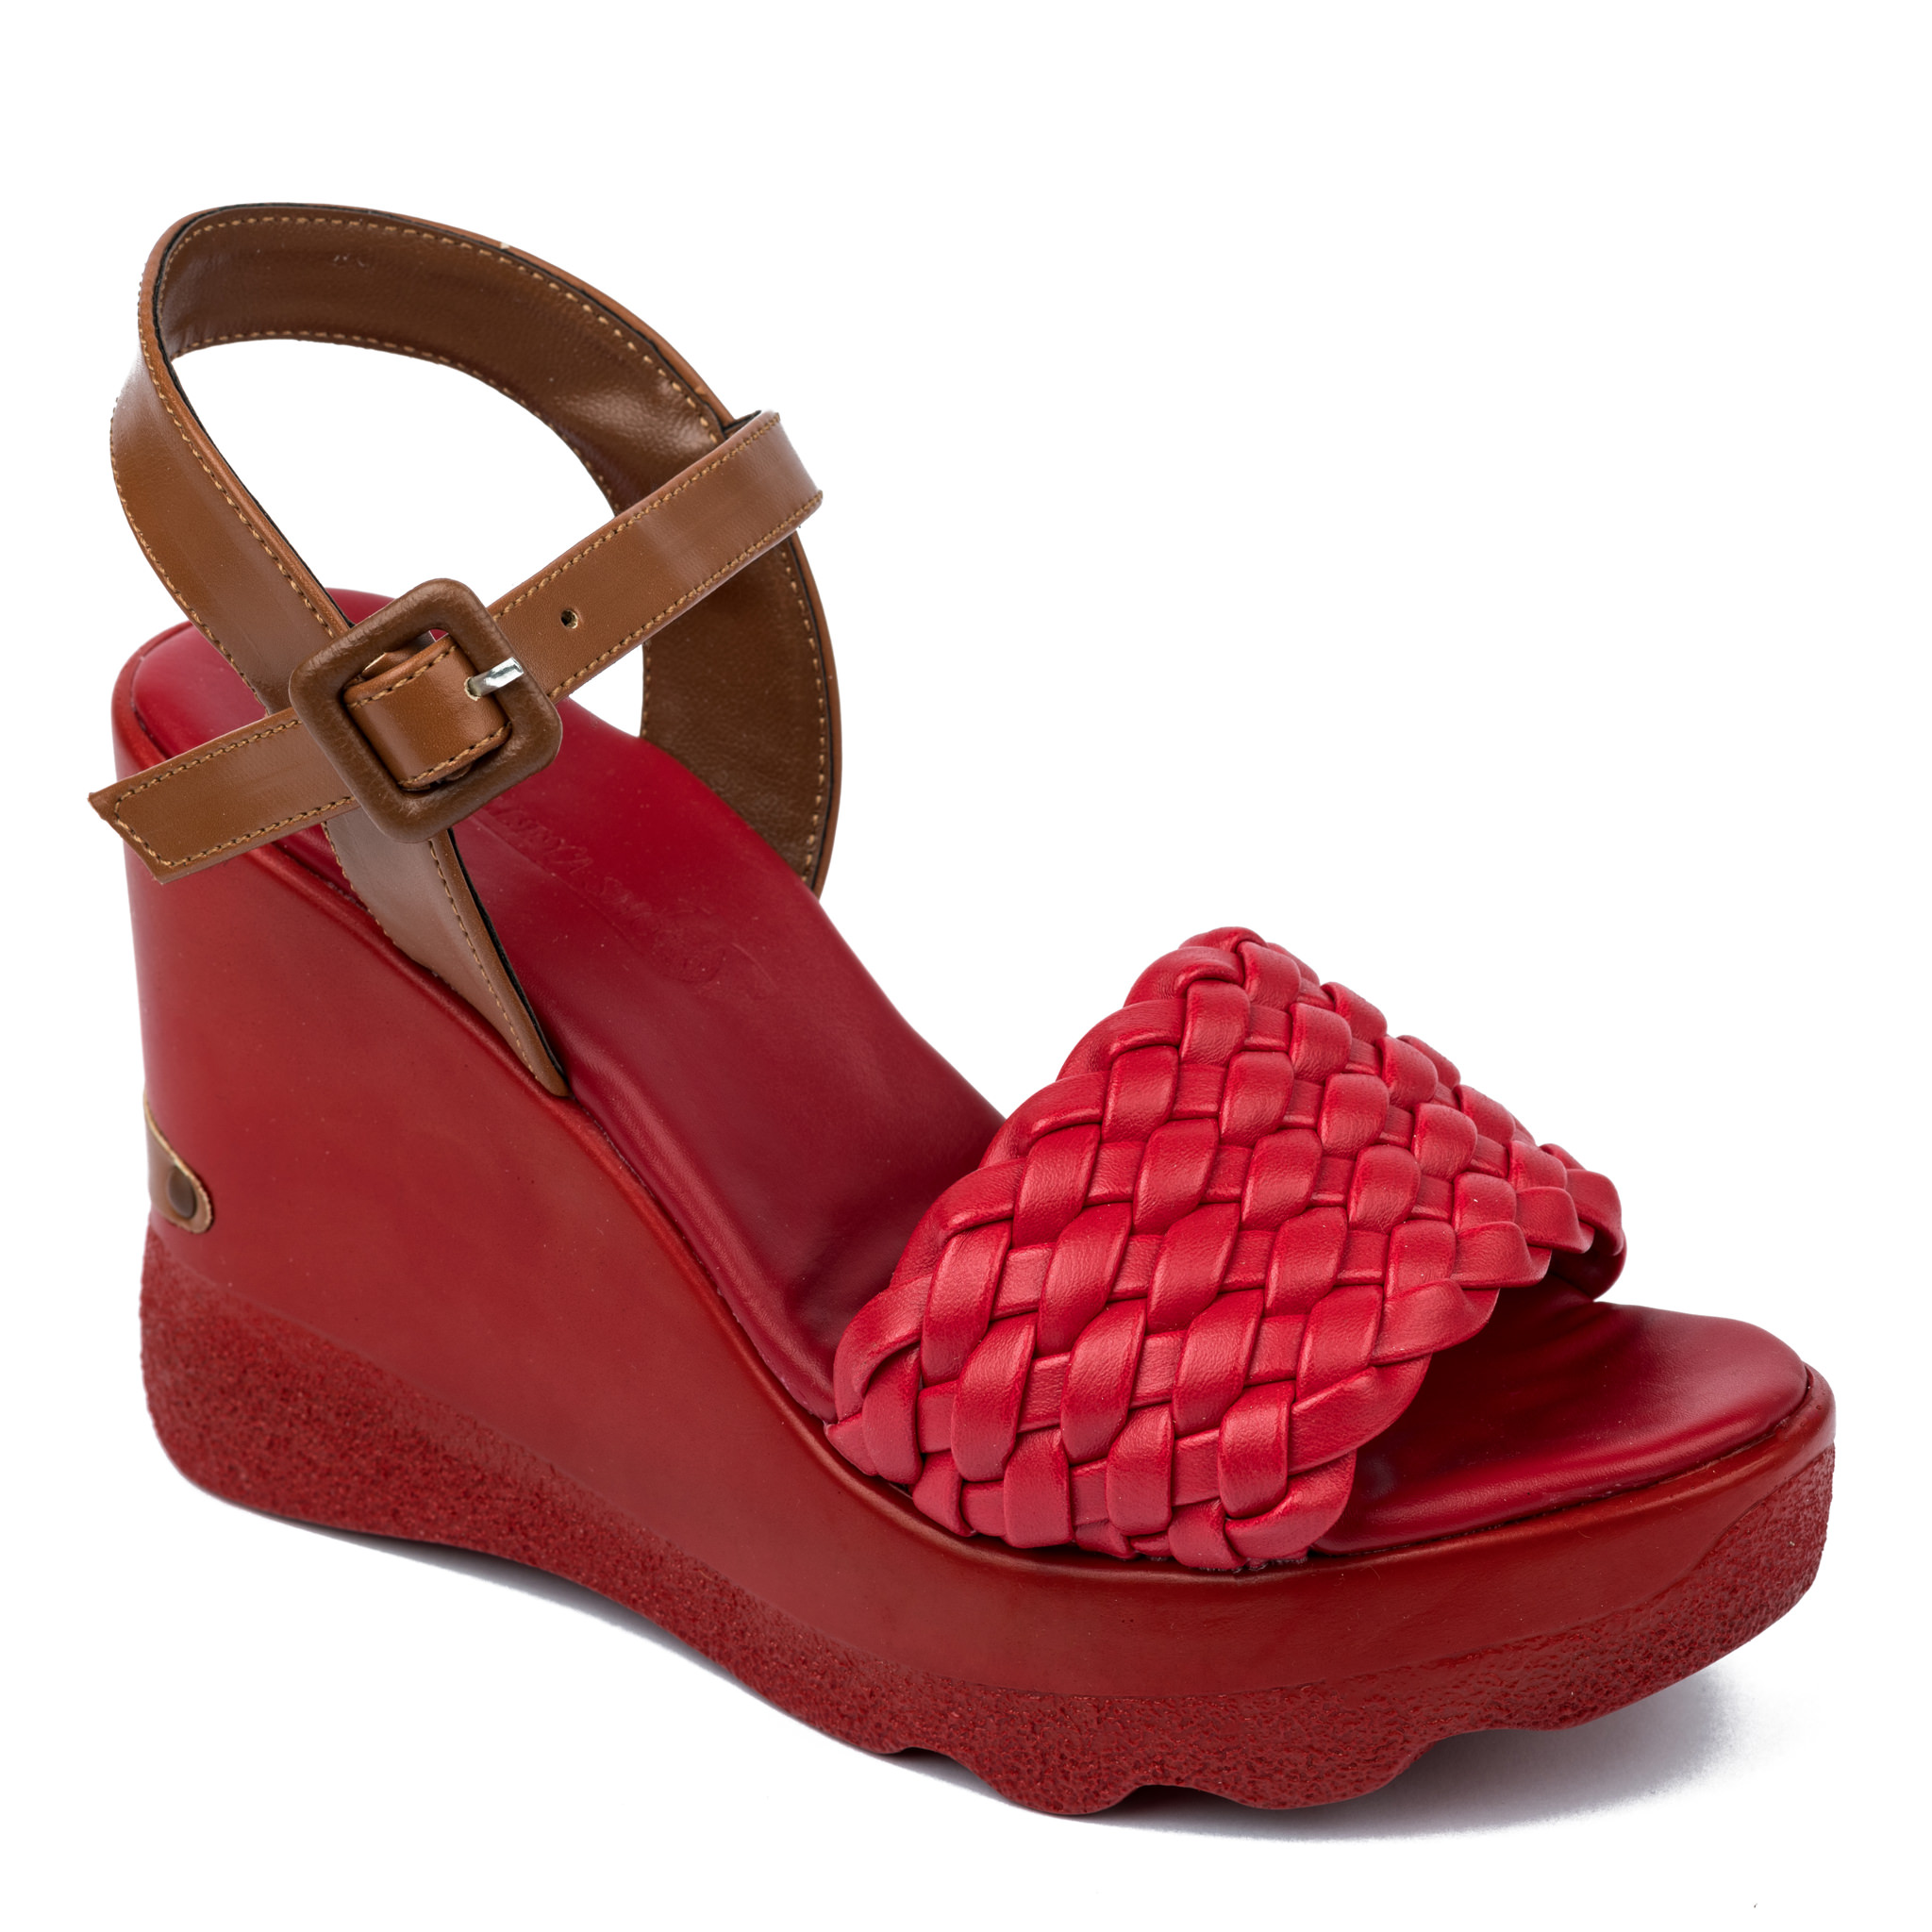 Women sandals A324 - RED